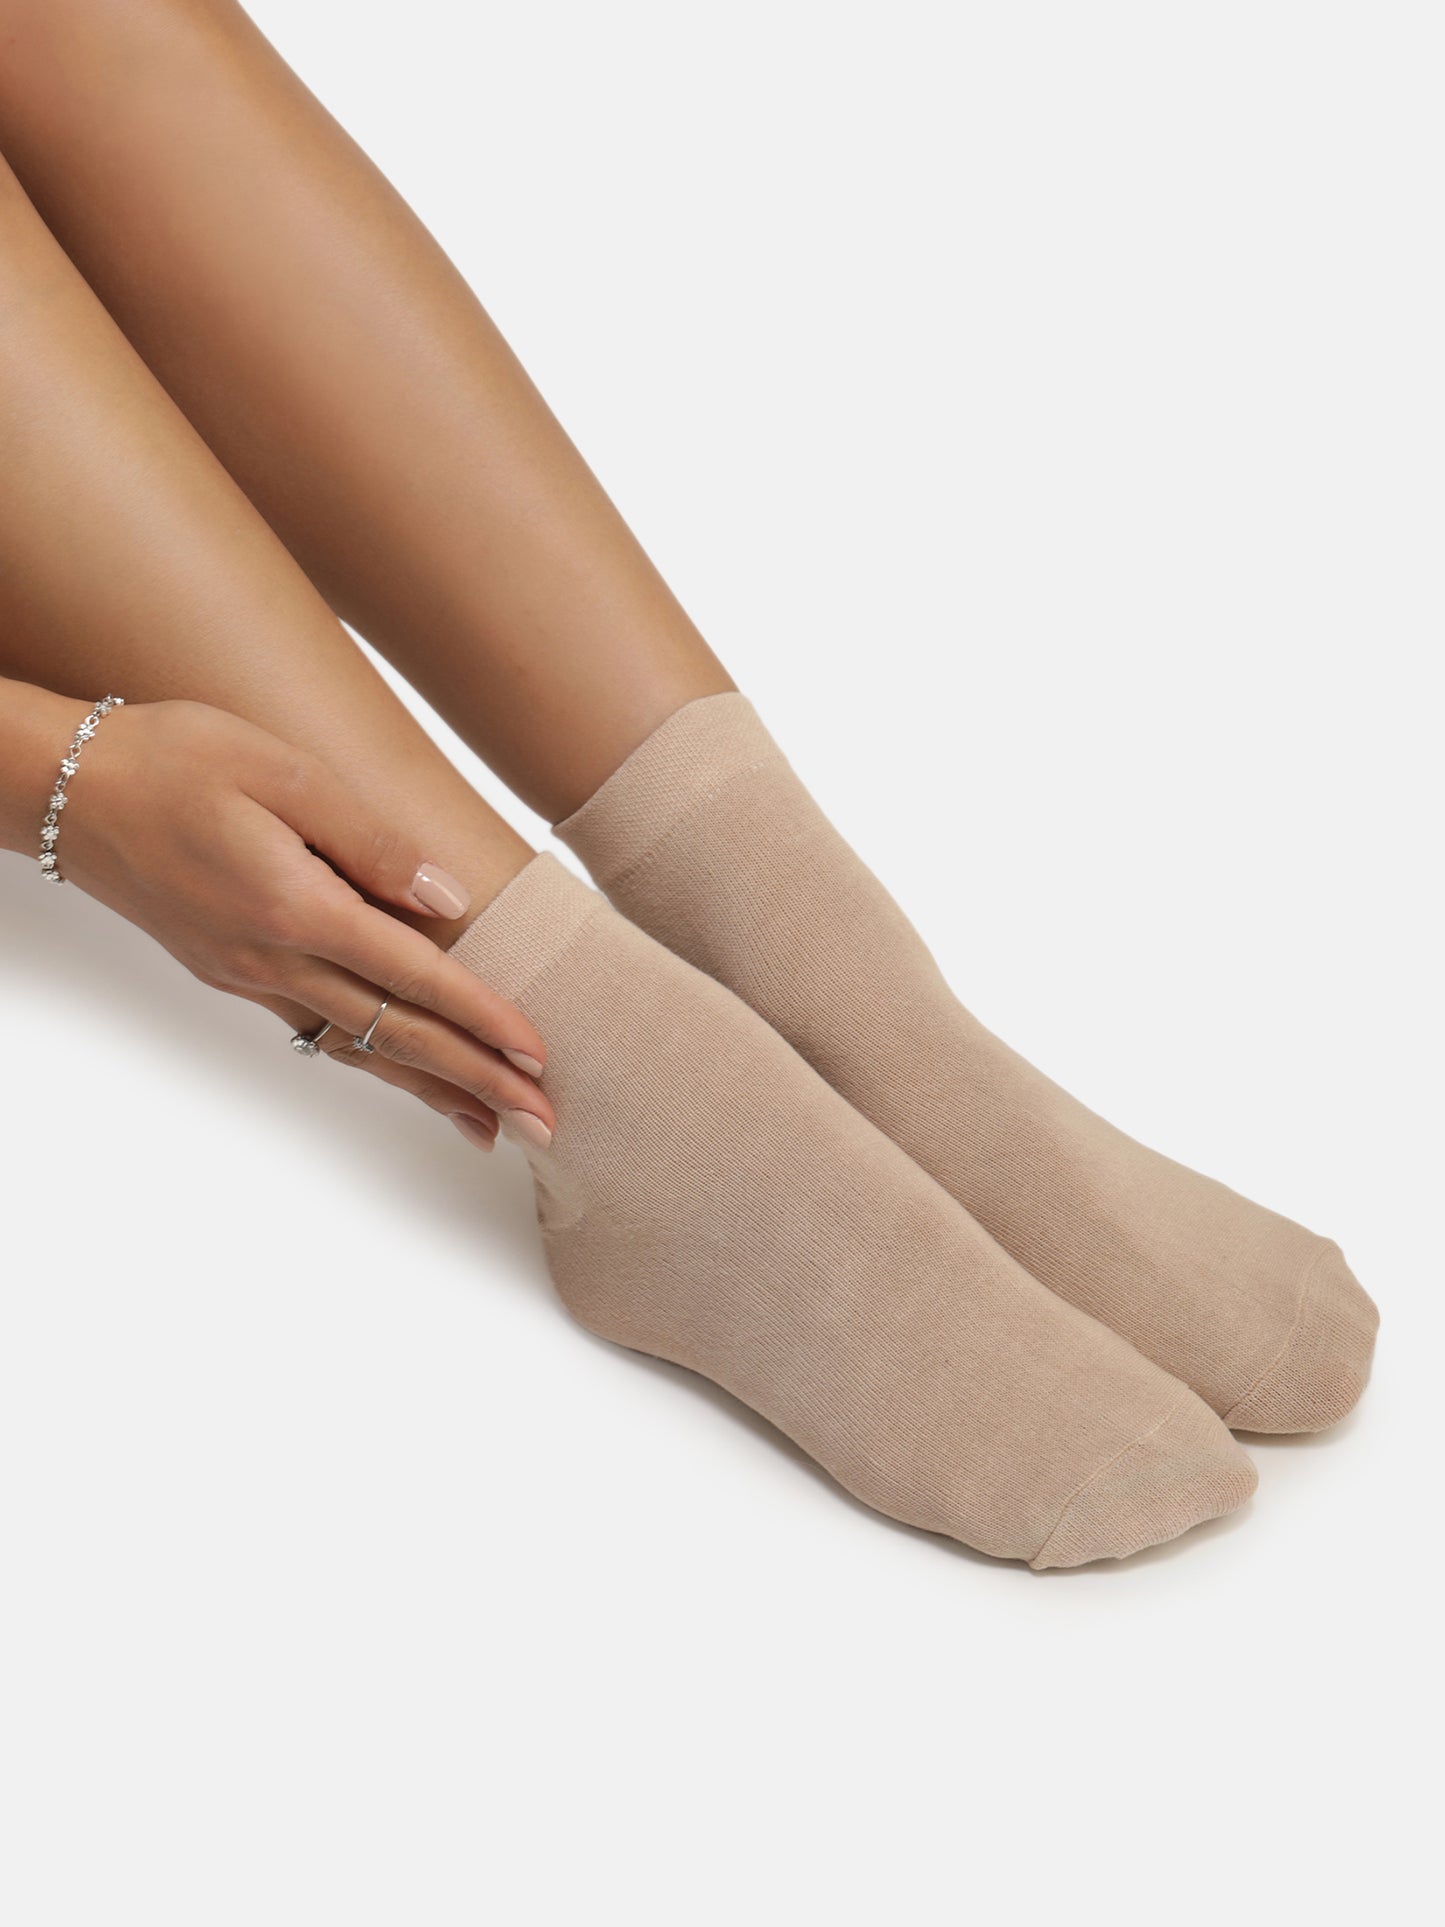 Ankle Length Socks - Skin